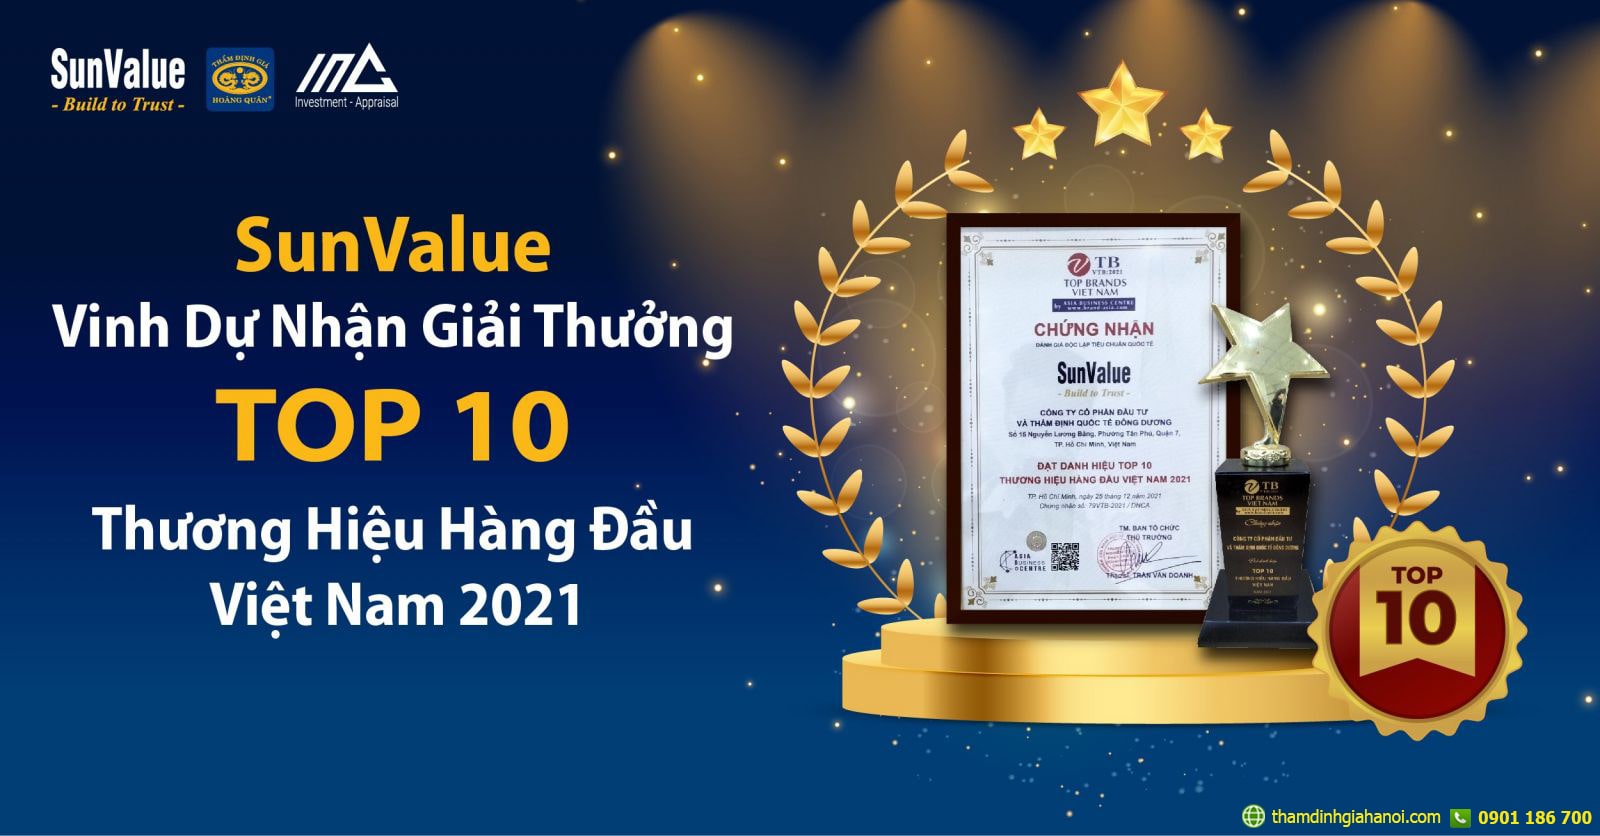 Thẩm định giá Sunvalue nhận giải thưởng TOP 10 Thương hiệu hàng đầu Việt Nam 2021